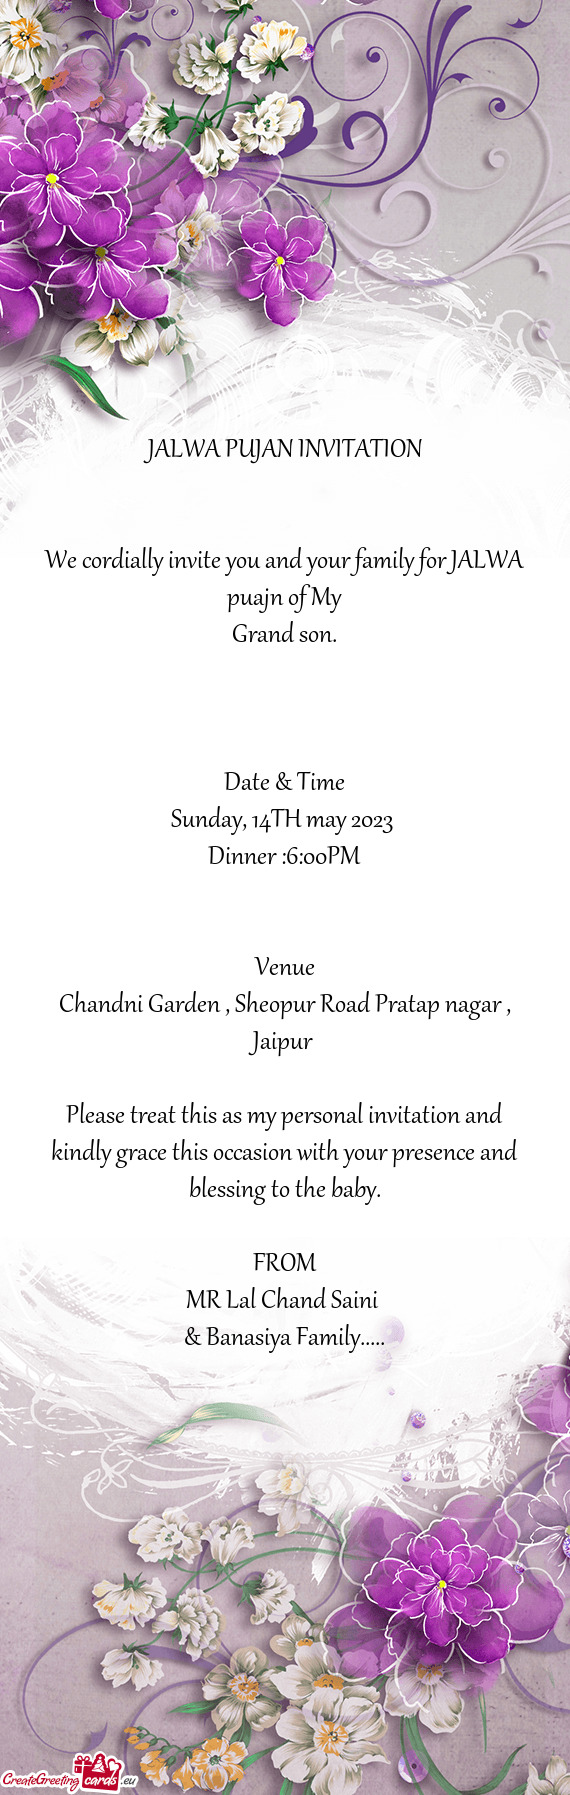 Chandni Garden , Sheopur Road Pratap nagar , Jaipur